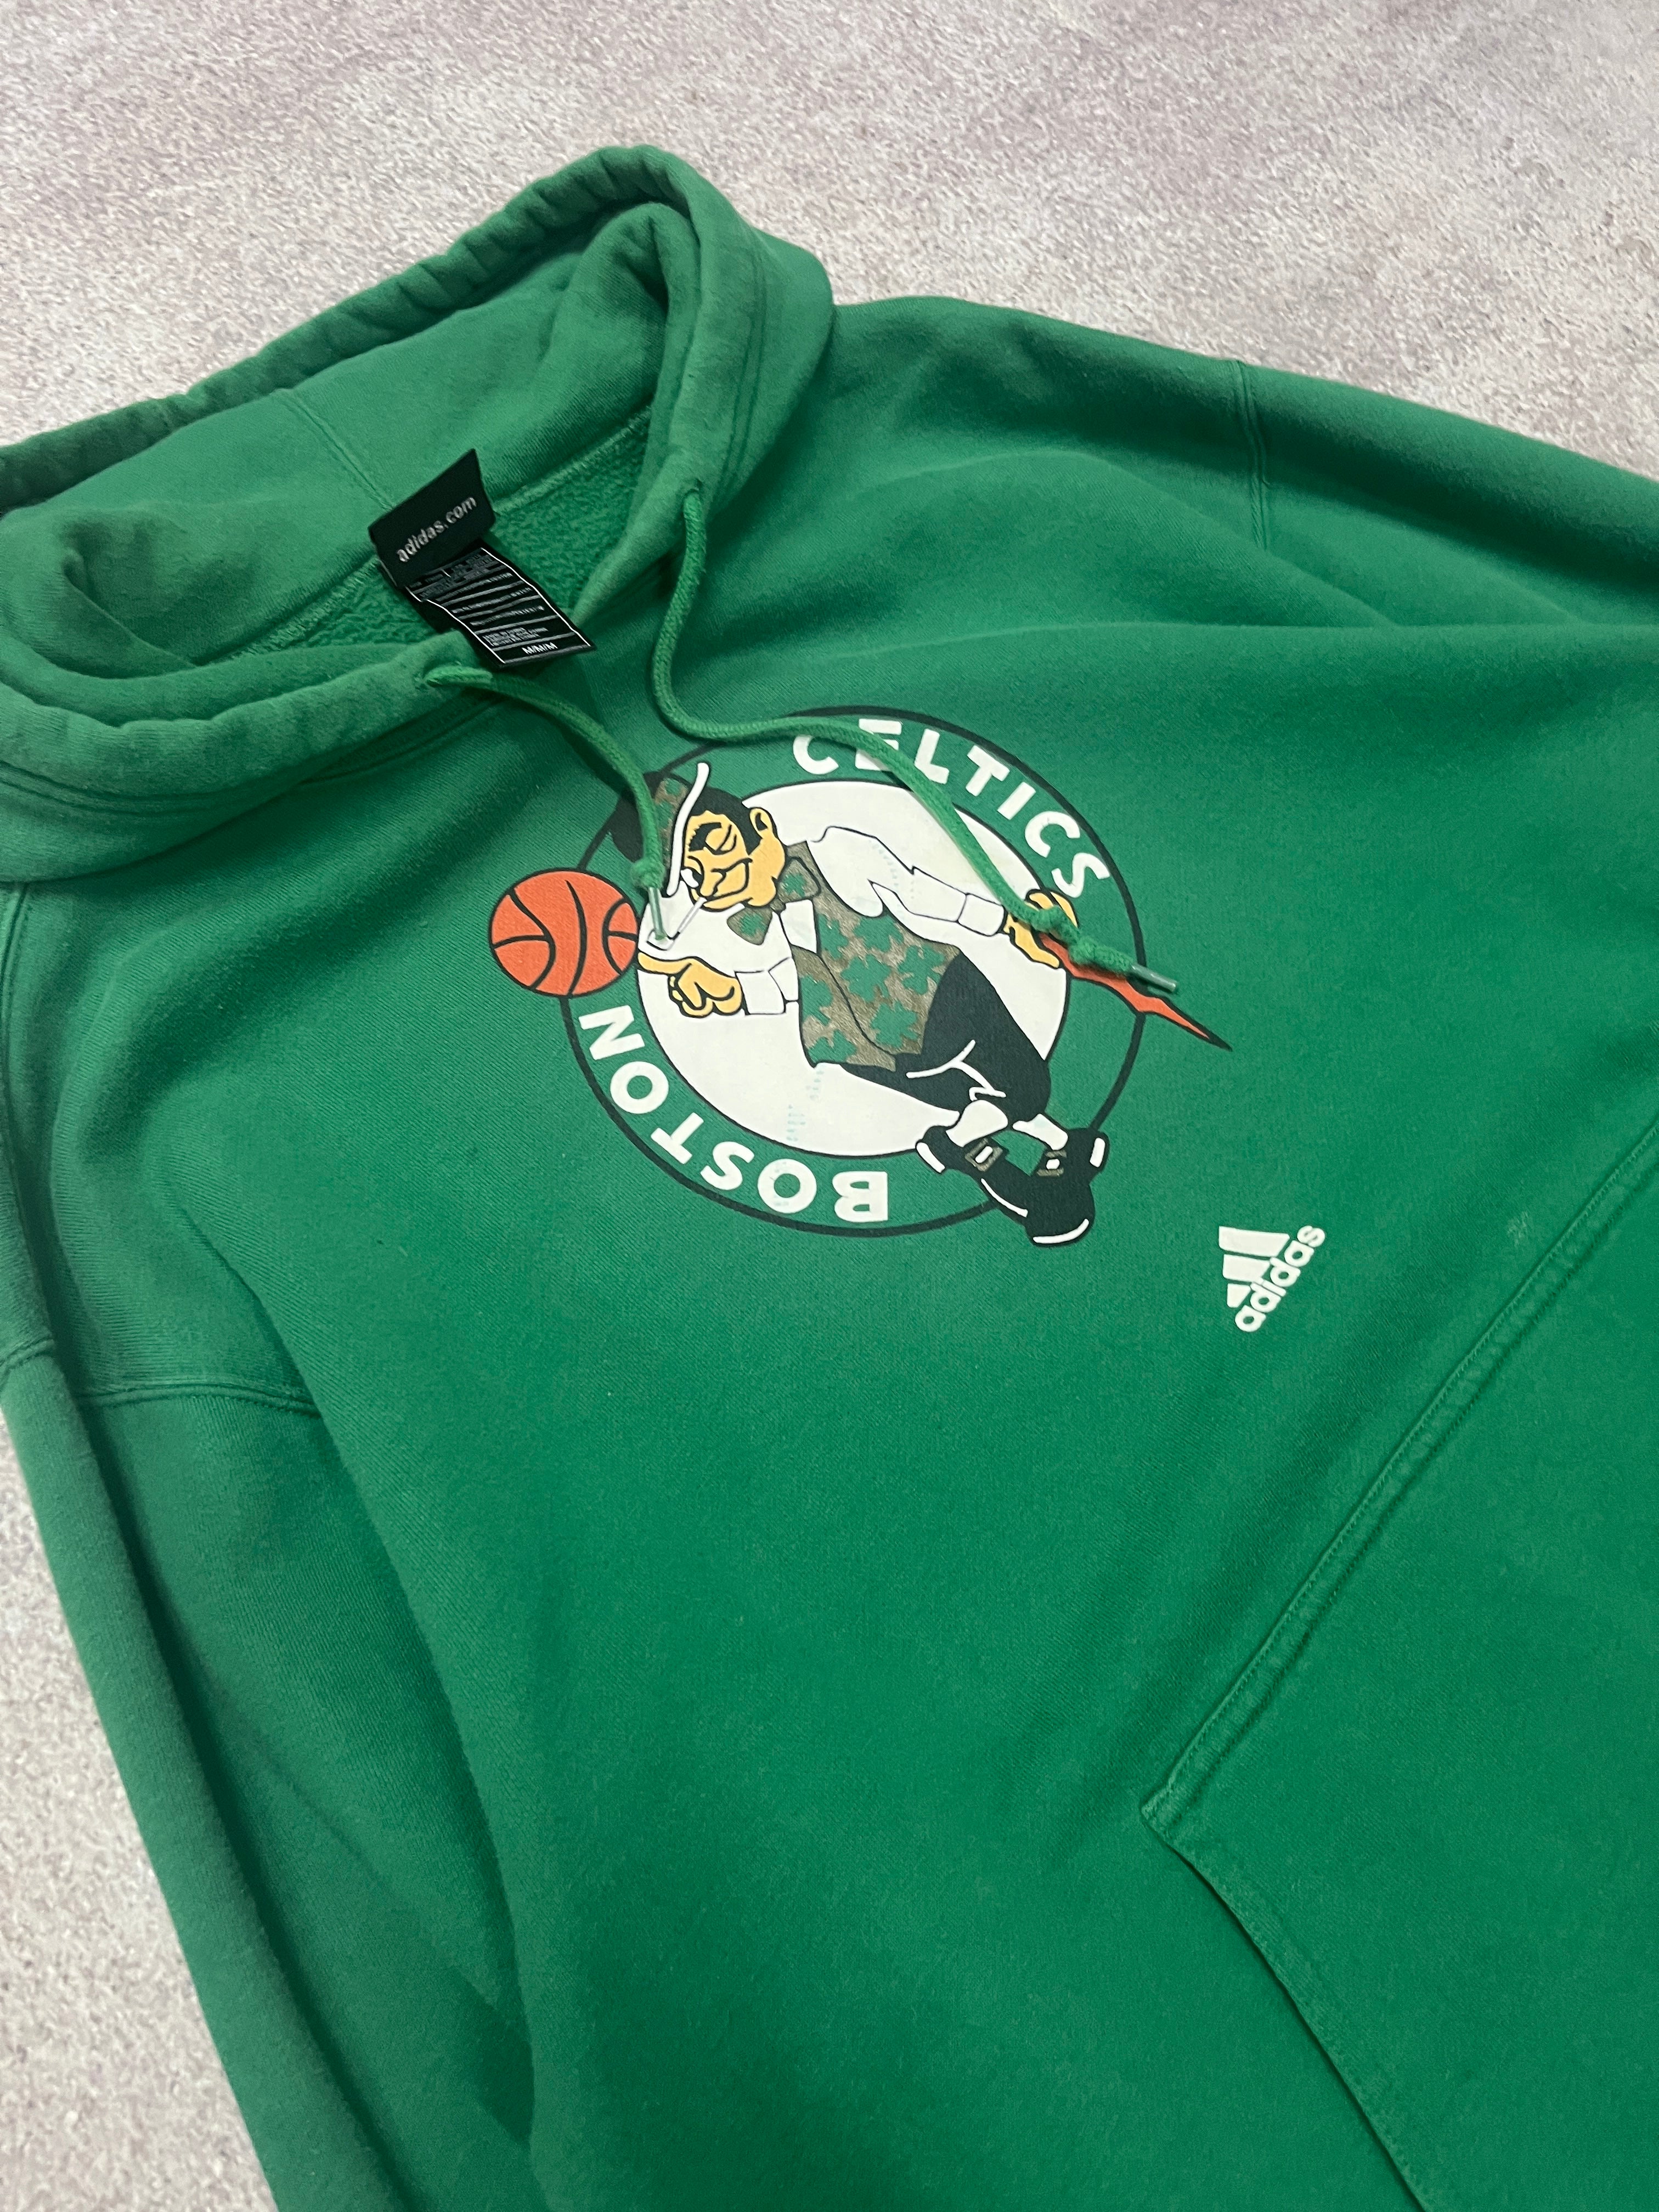 Vintage Boston Celtics Adidas Hoodie Green  // Large - RHAGHOUSE VINTAGE